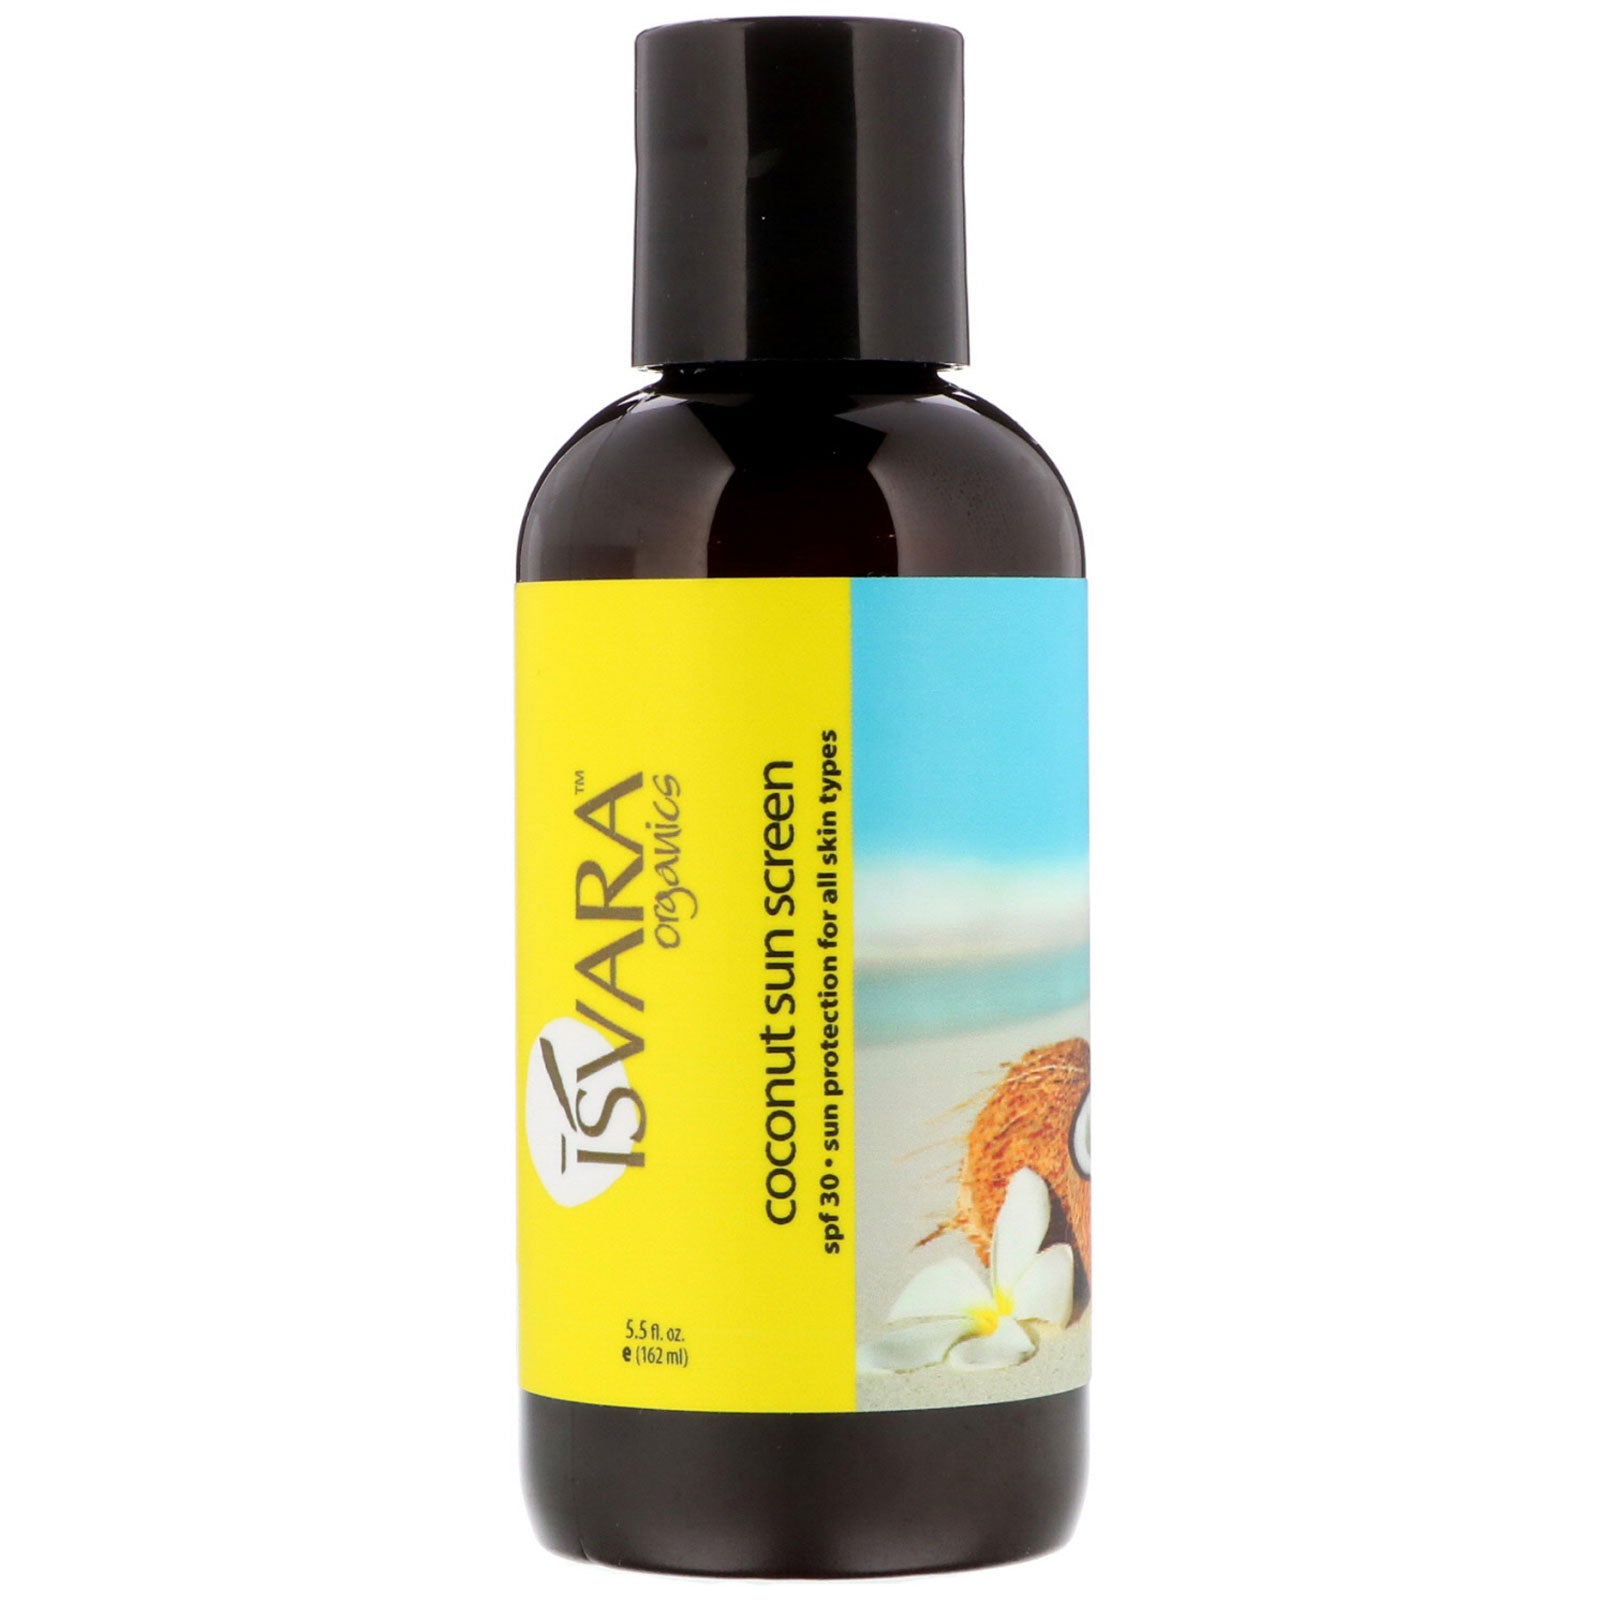 Isvara Organics, Coconut Sun Screen, SPF 30, 5.5 fl oz (162 ml)